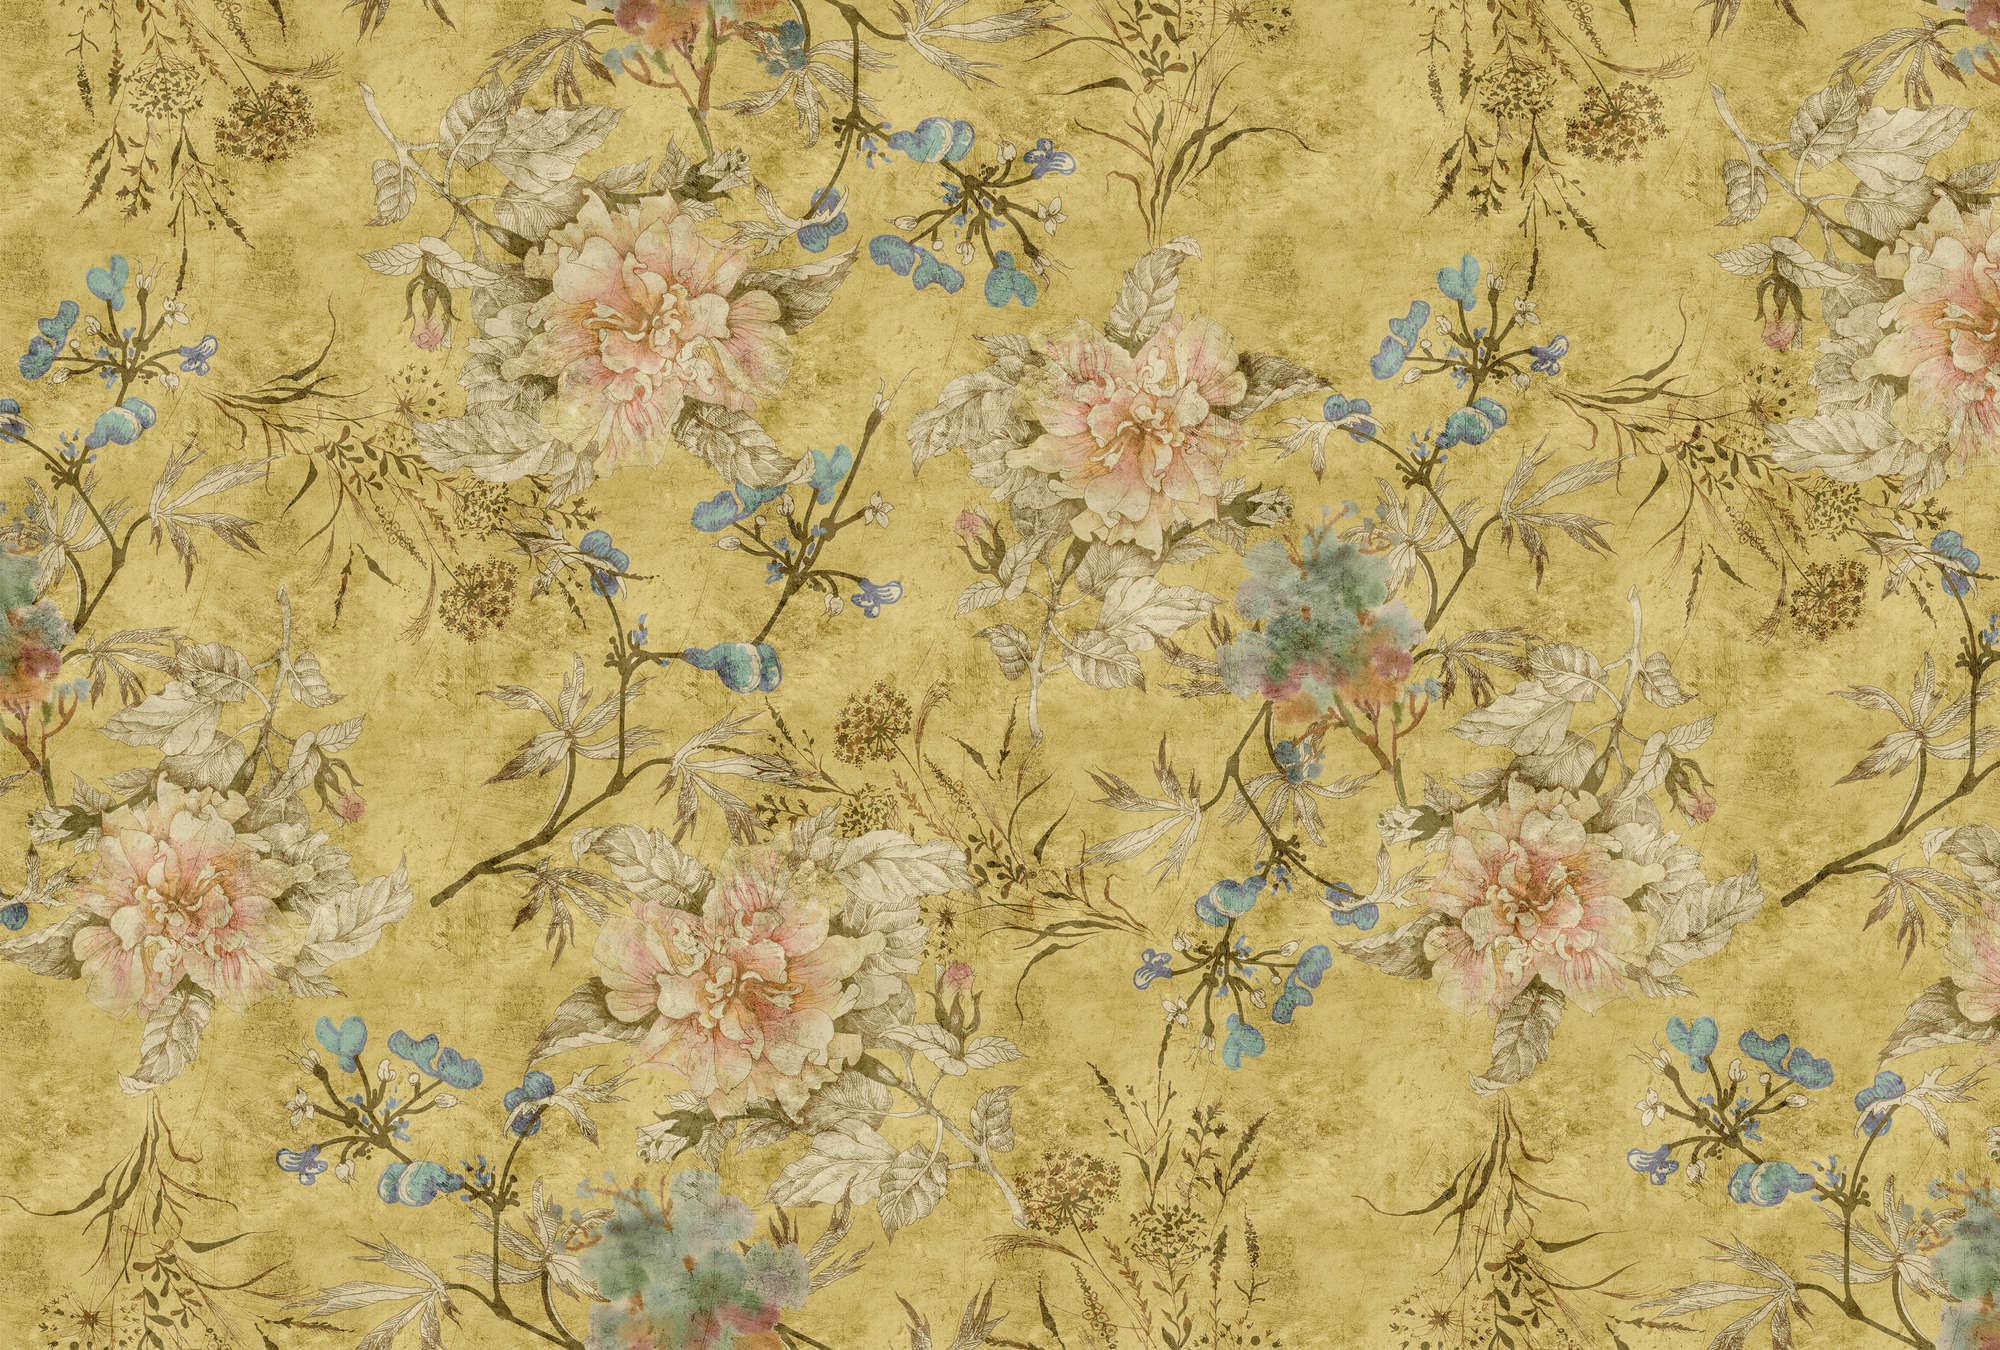             Tenderblossom 2 - Vintage Look Floral Wallpaper- Kras textuur - Geel | Premium Smooth Vliesbehang
        